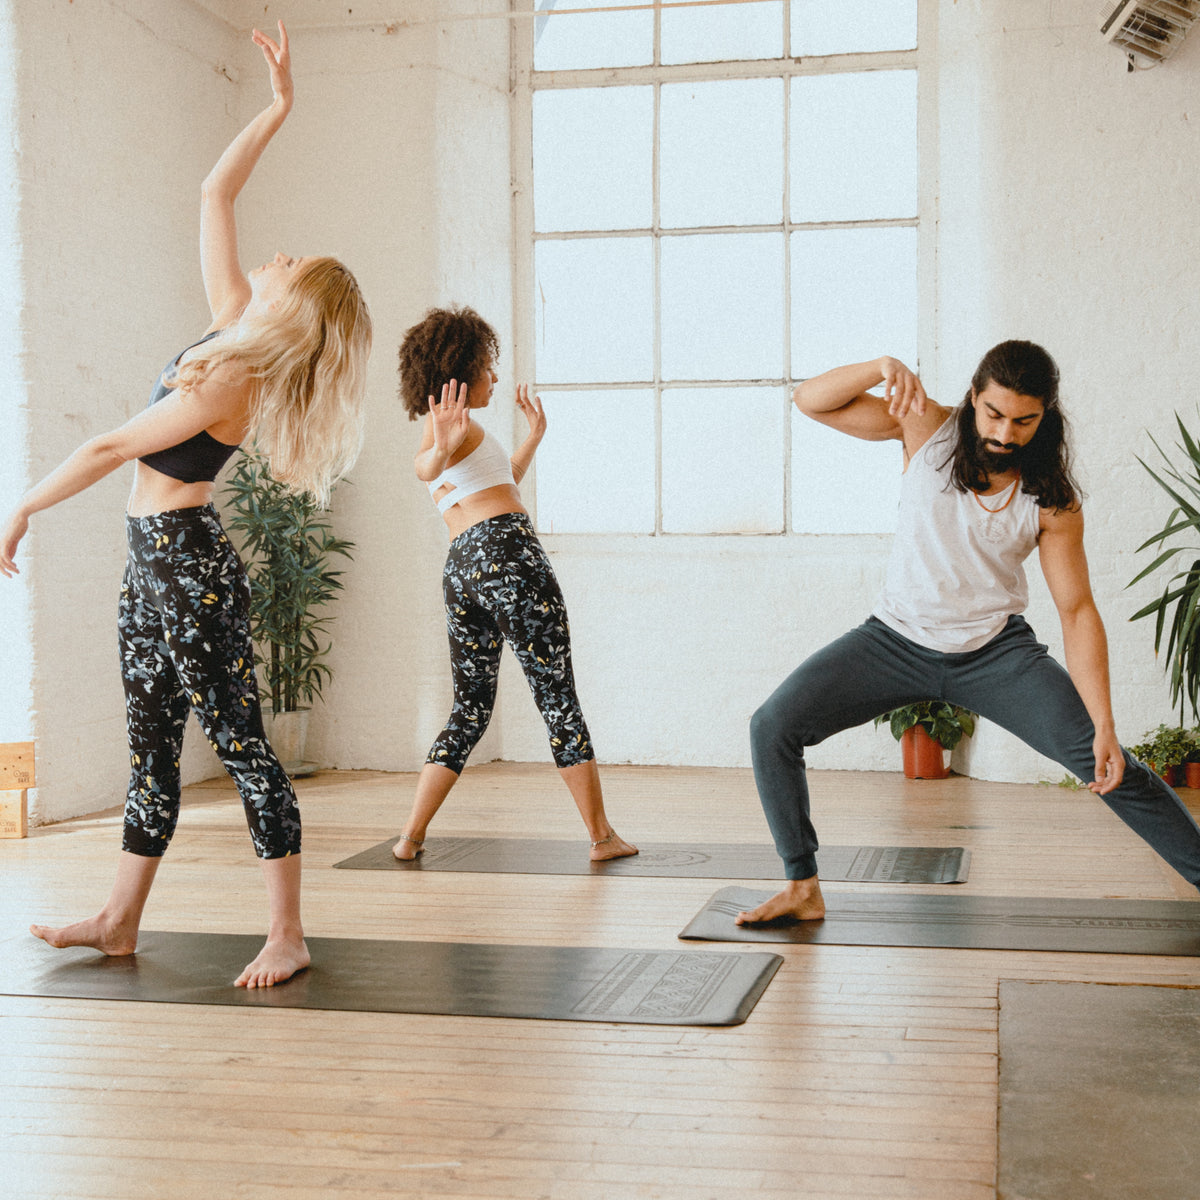 What Should You Wear To A Yoga Class? – Yogi Bare